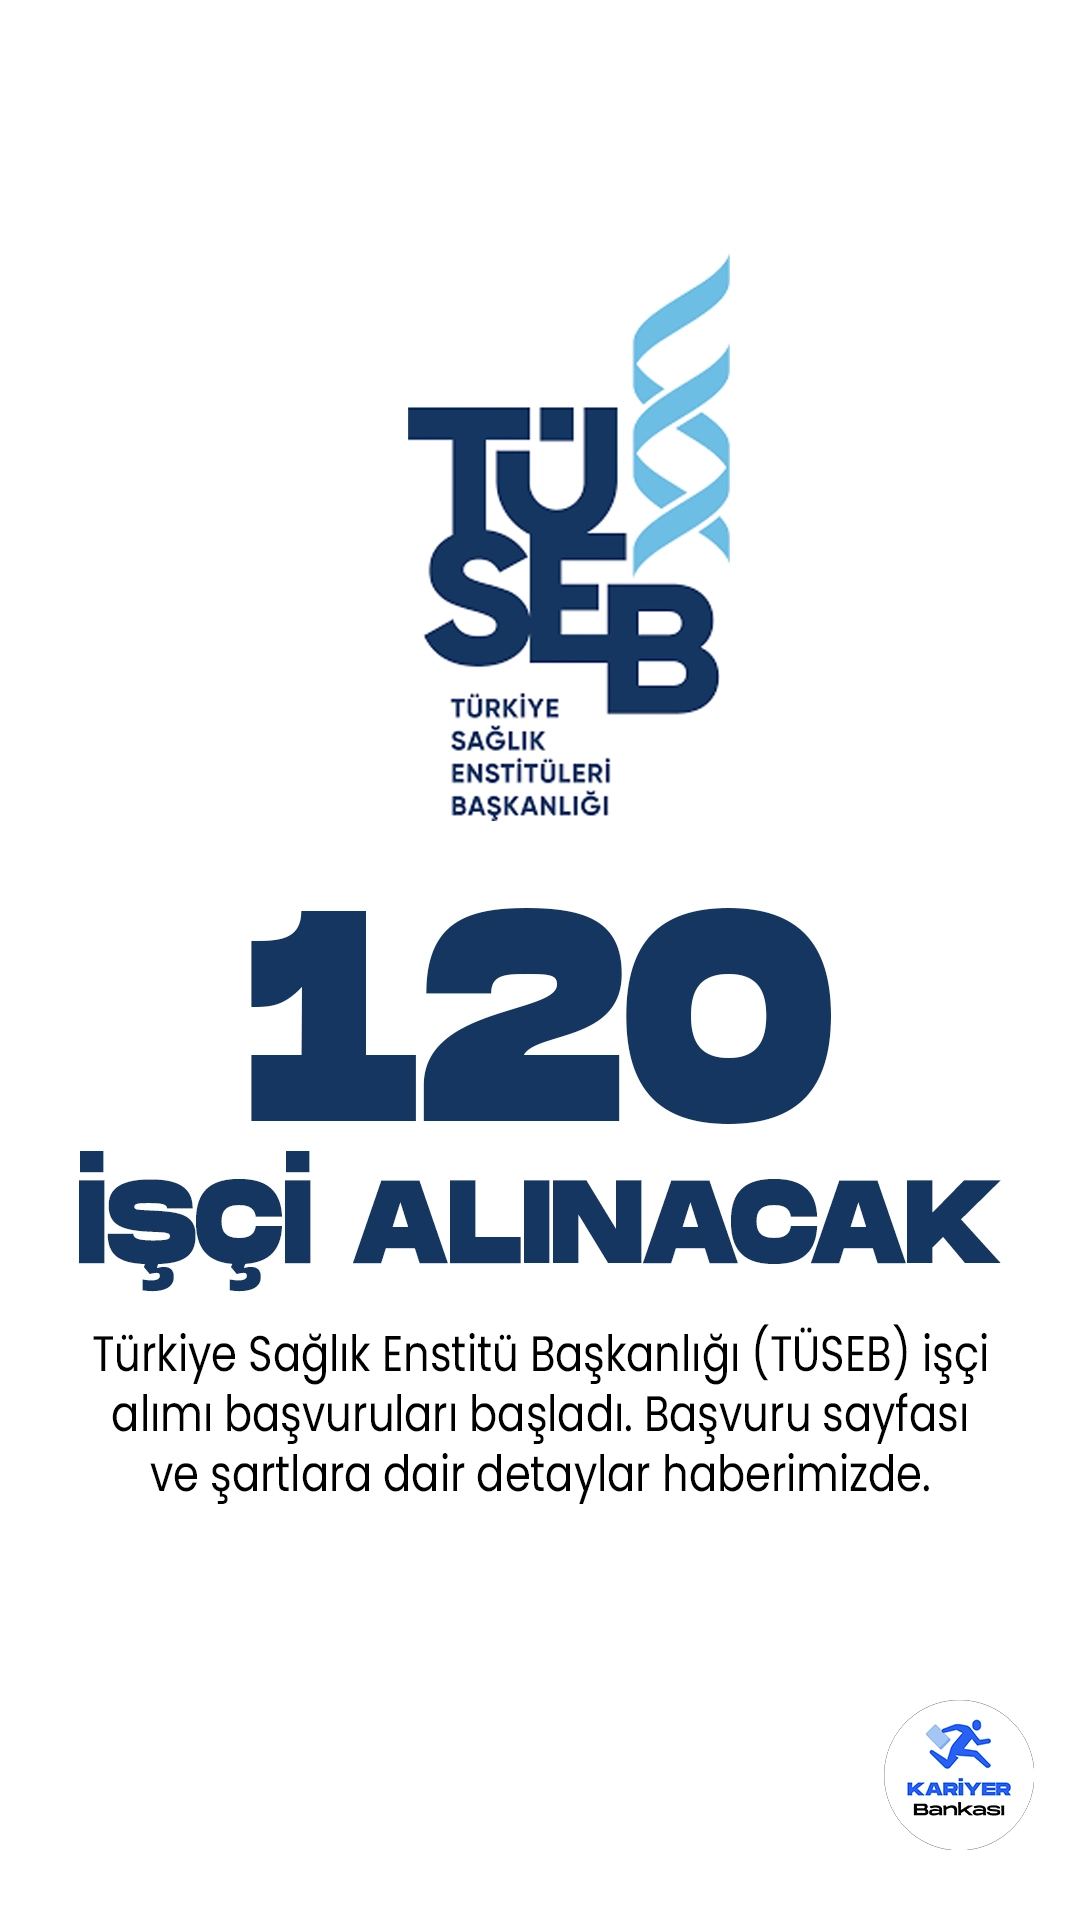 Türkiye Sağlık Enstitü Başkanlığı (TÜSEB) işçi alımı başvuruları başladı. Cumhurbaşkanlığı SBB Kamu ilan sitesinde yayımlanan duyuruya göre, TÜSEB'e  V.H.K.İ, biyolog, mütercim-tercüman, avukat, istatistikçi, kimyager, programcı, şoför, tekniker, mühendis unvanlarında olmak üzere 120 sürekli işçi alımı yapılacak. Başvurular 12 Haziran itibariyle başladı. Başvuru yapacak adayların belirtilen başvuru şartlarını dikkatle incelemesi gerekmektedir.